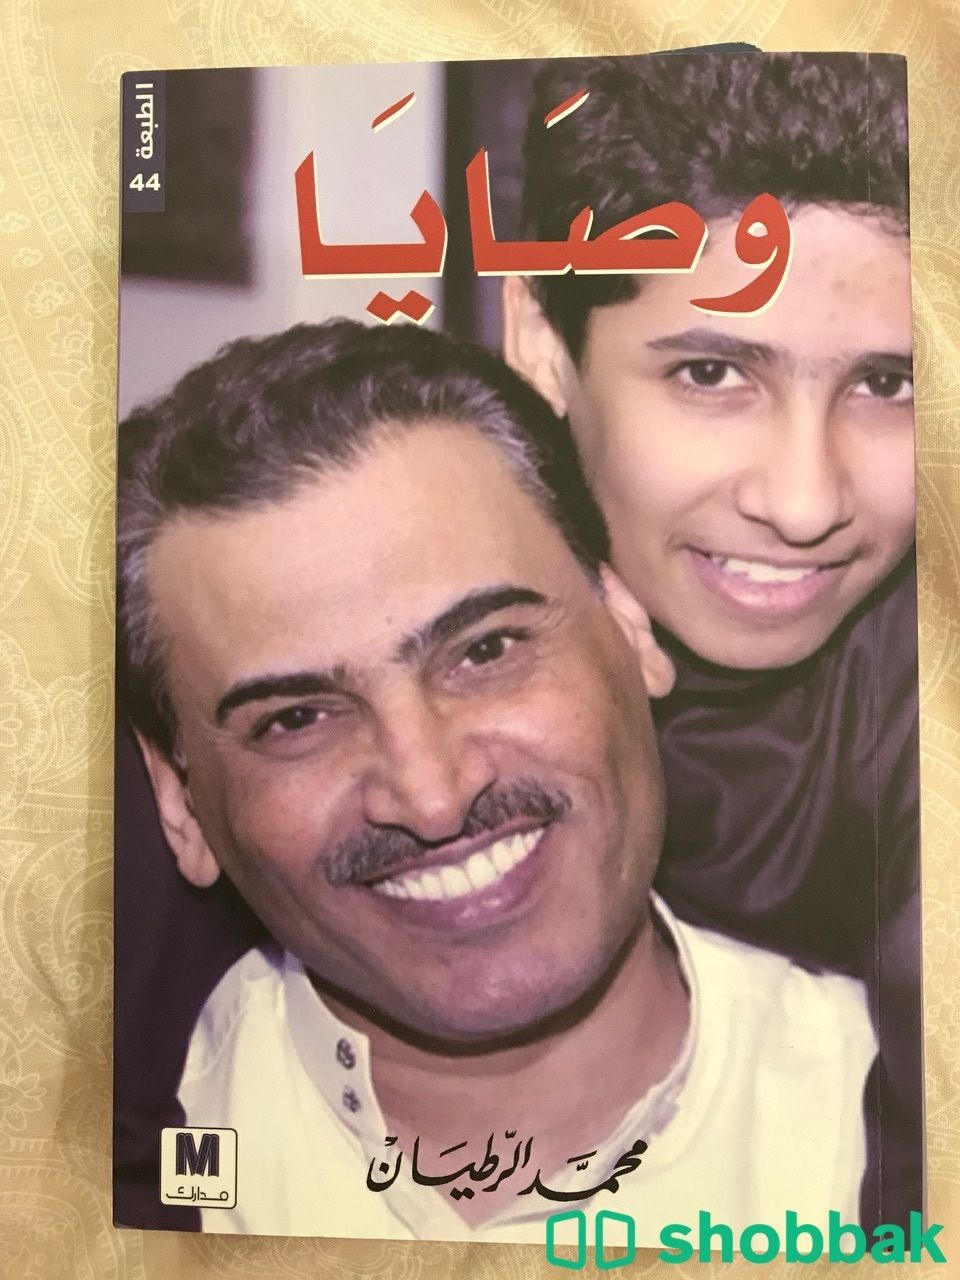 كتاب وصايا للكاتب محمد الرطيان Shobbak Saudi Arabia